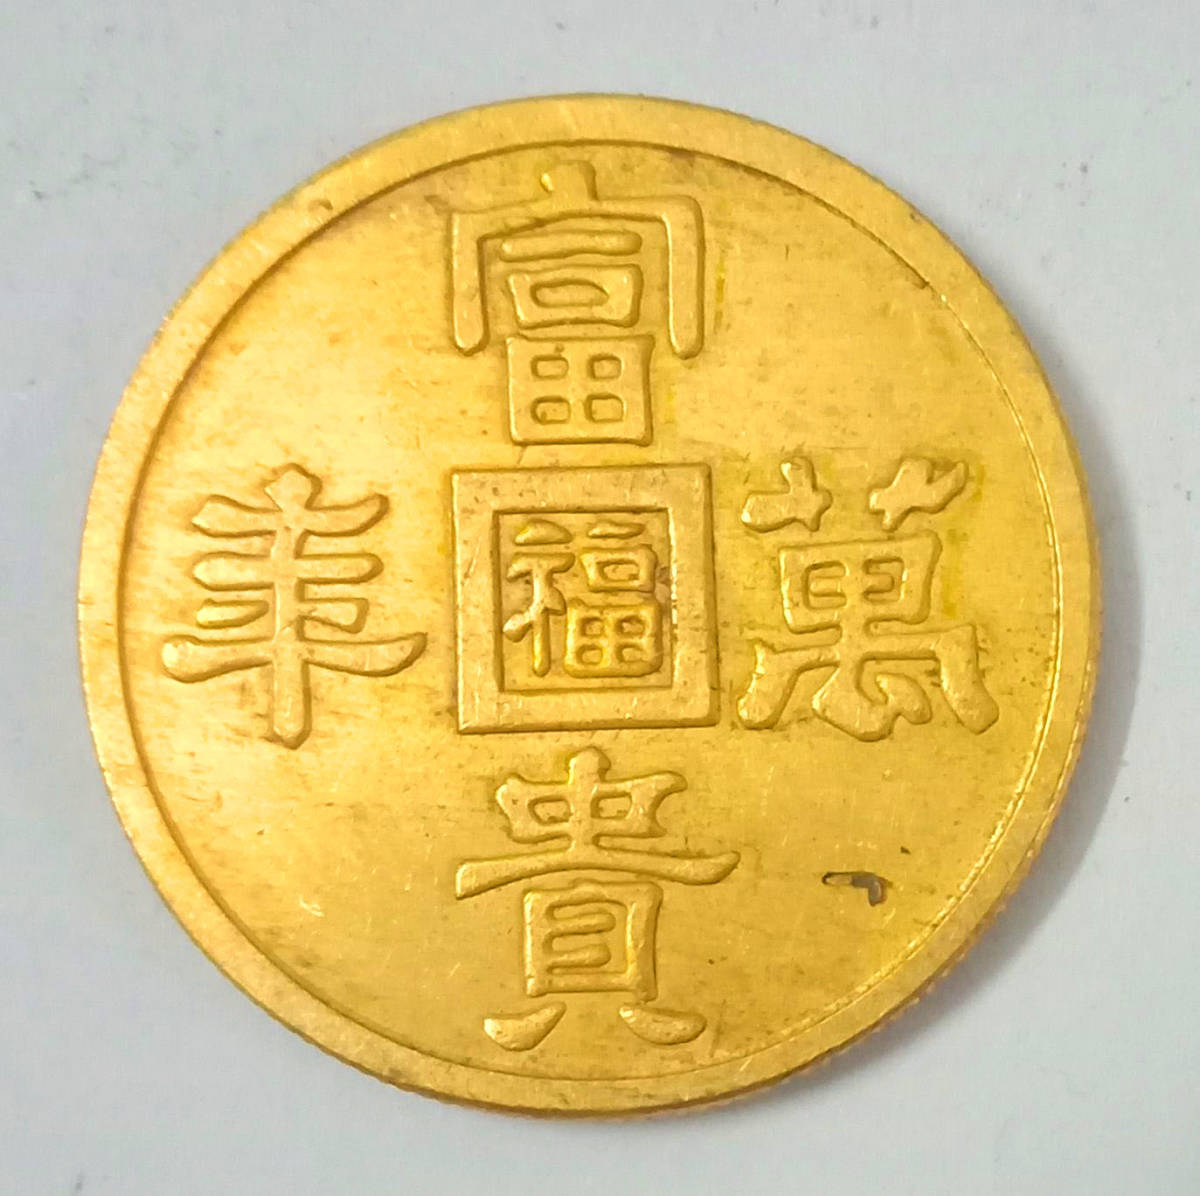  原文:満州国金貨 旧日本軍用金幣 富貴萬年 福 背24K 1000パーセント刻印有り 金貨 30.7mm 12.4g